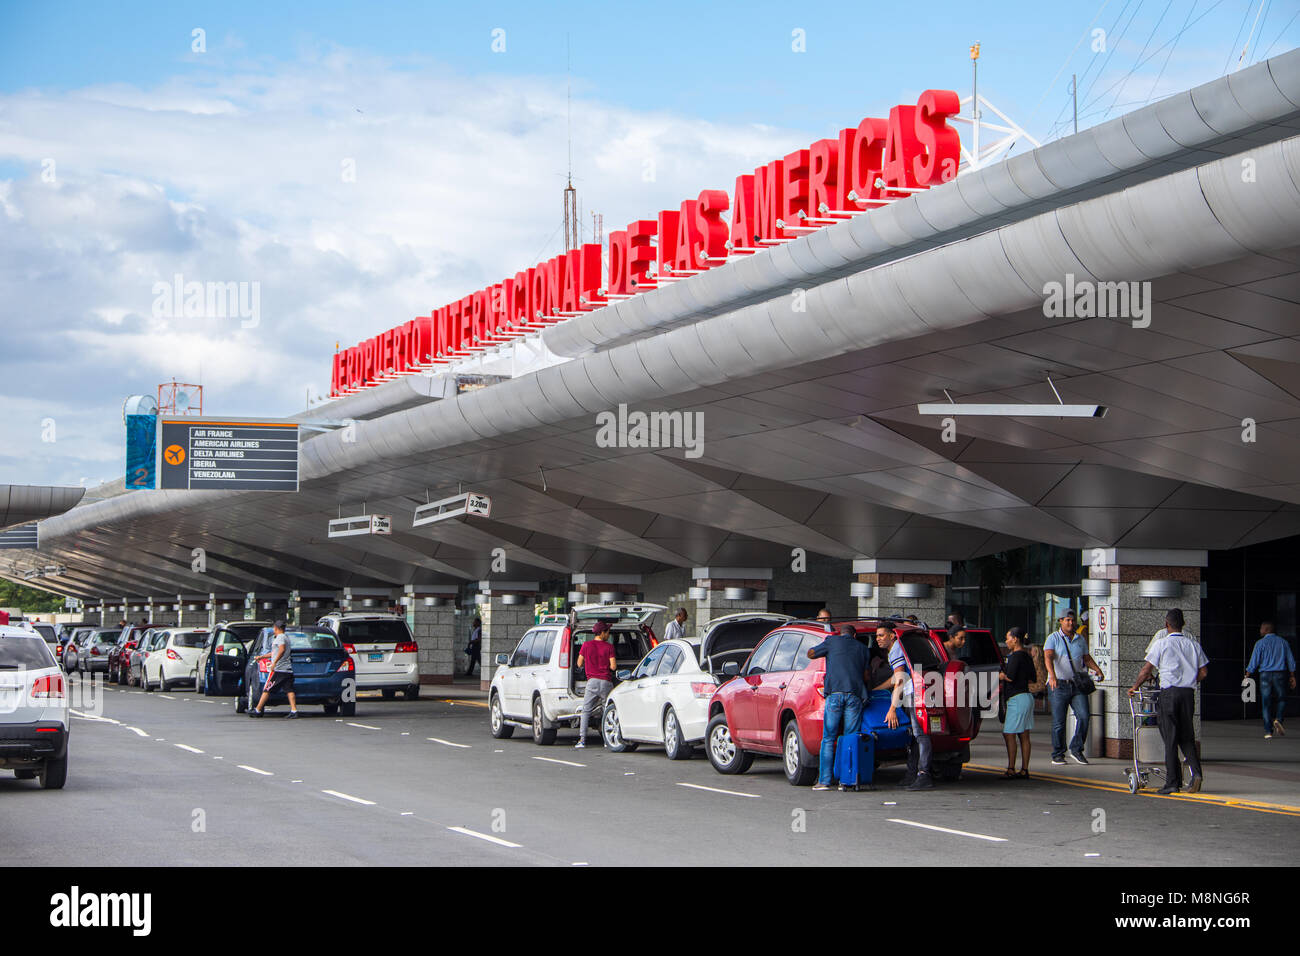 SDQ, Aeropuerto Las Américas, Aeroporto di Las Americas a Santo Domingo, Repubblica Domnican Foto Stock